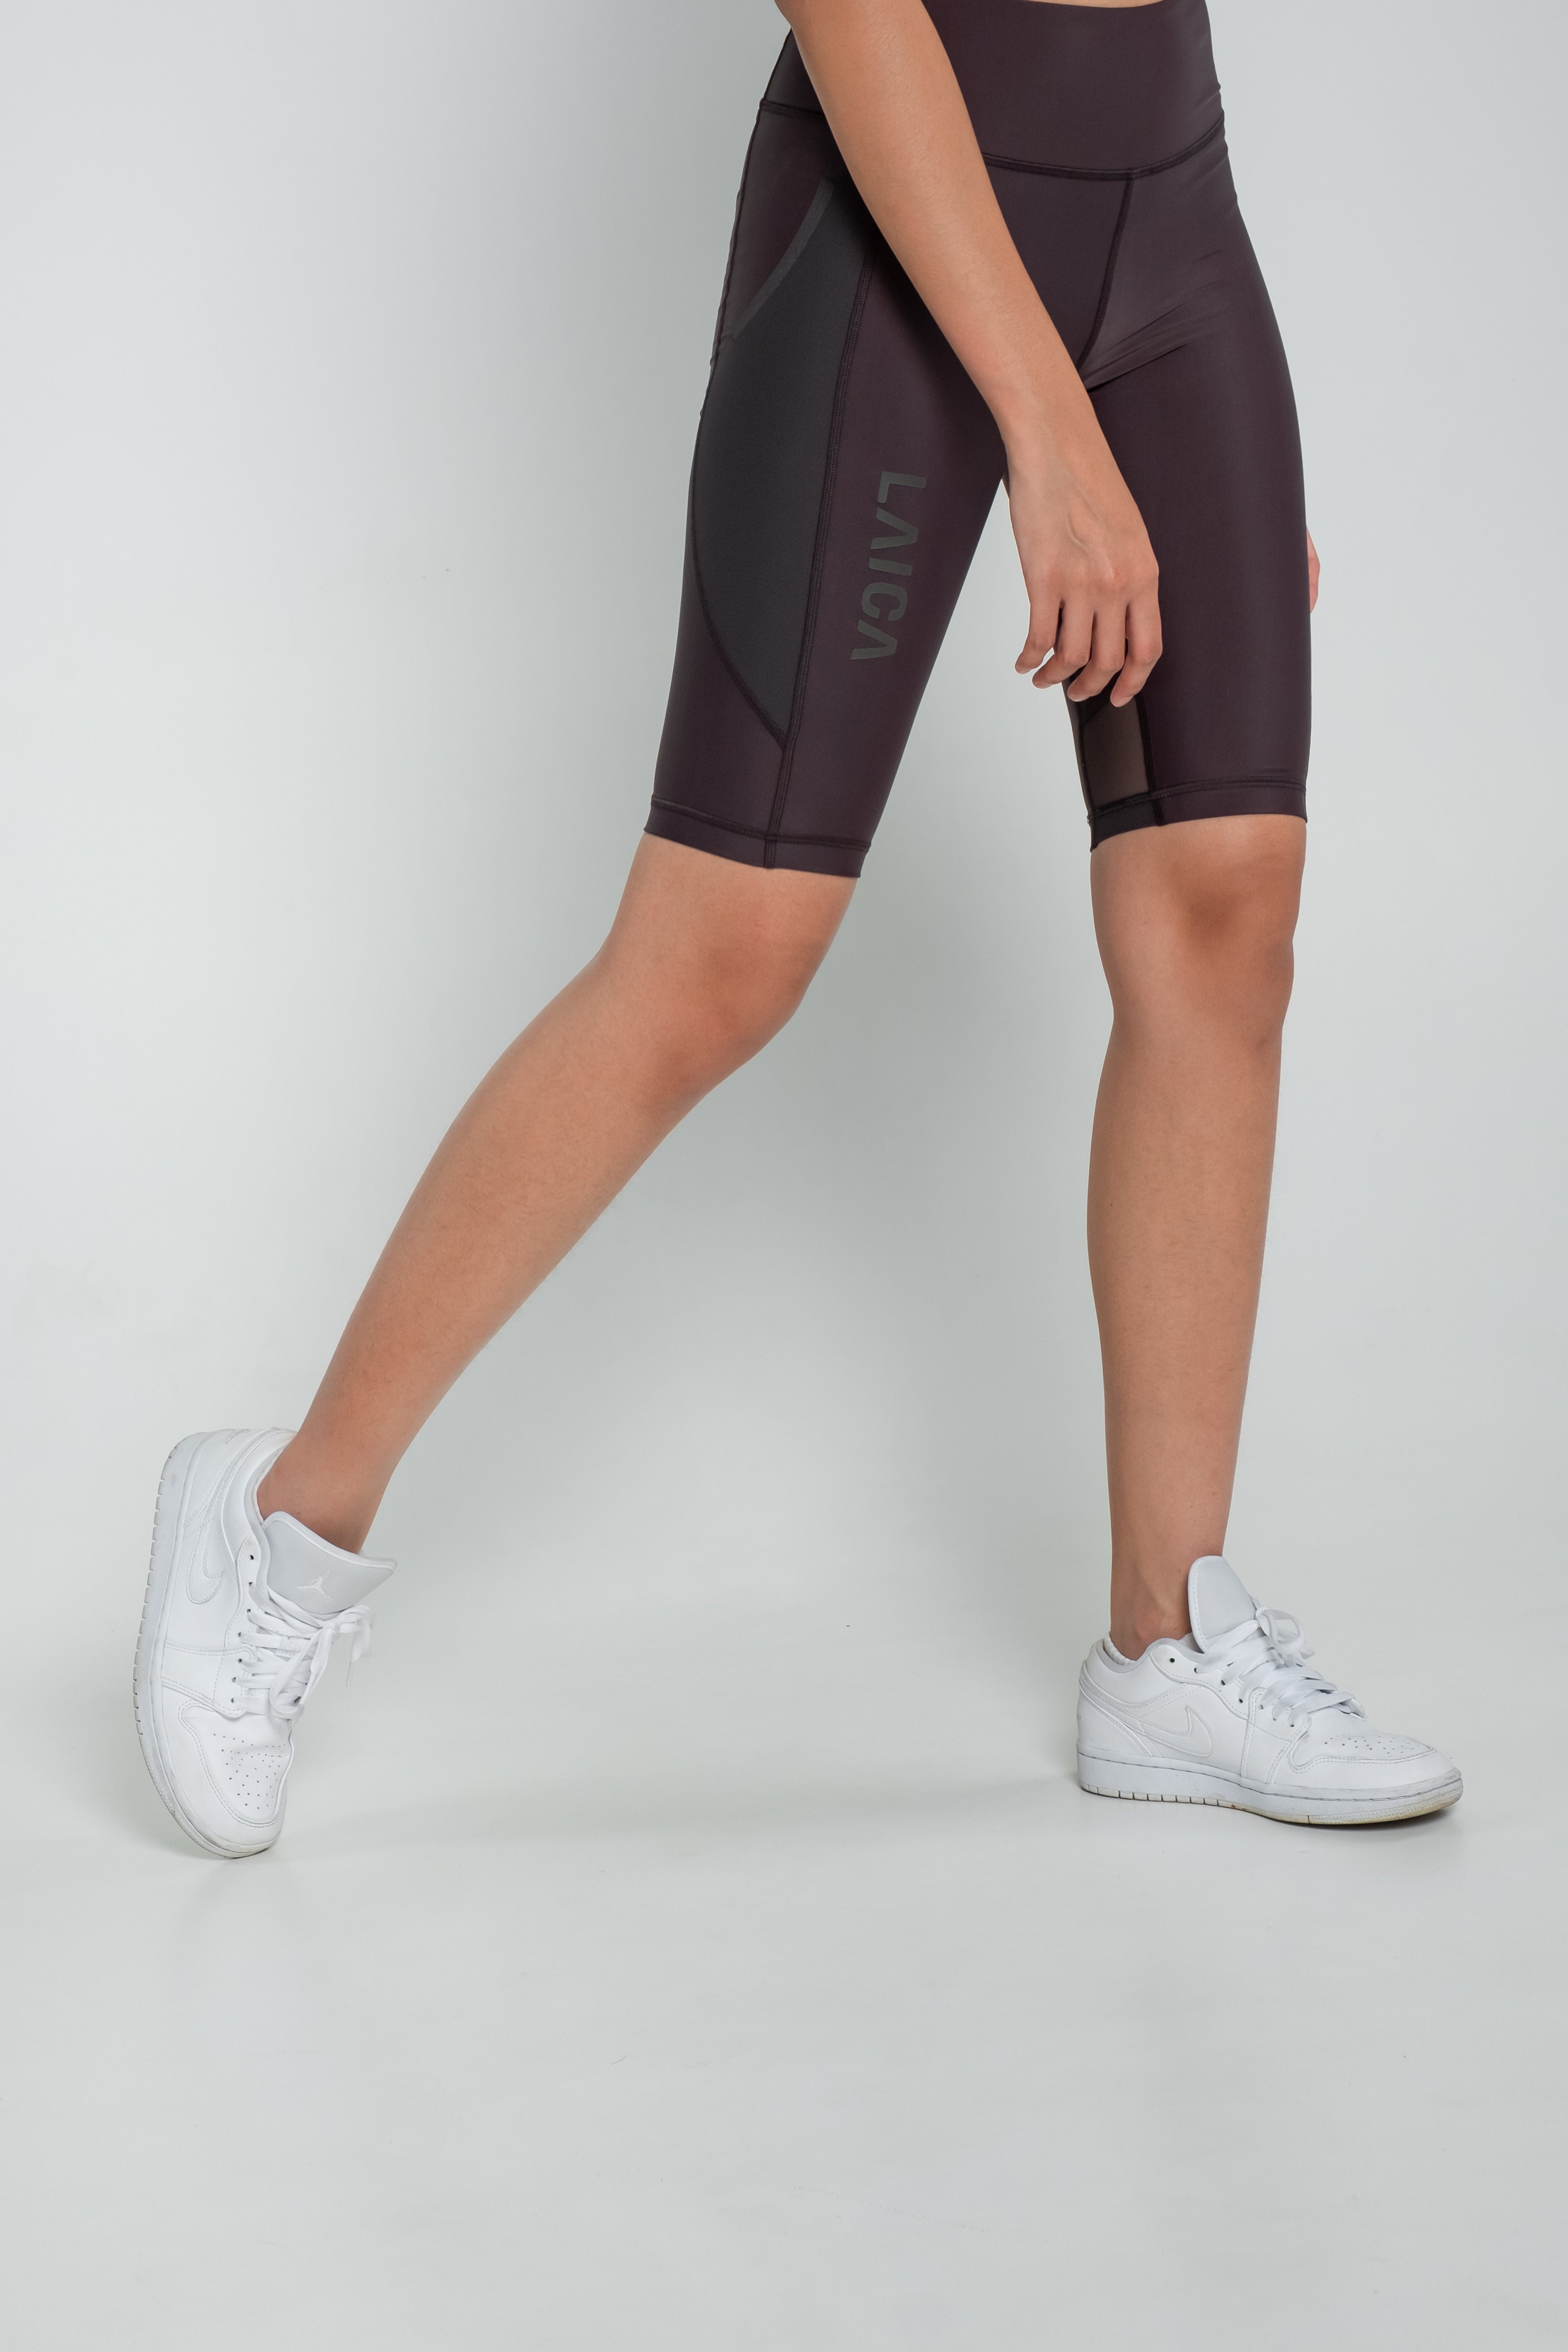 LAICA Pro Biker Shorts - Anthracite